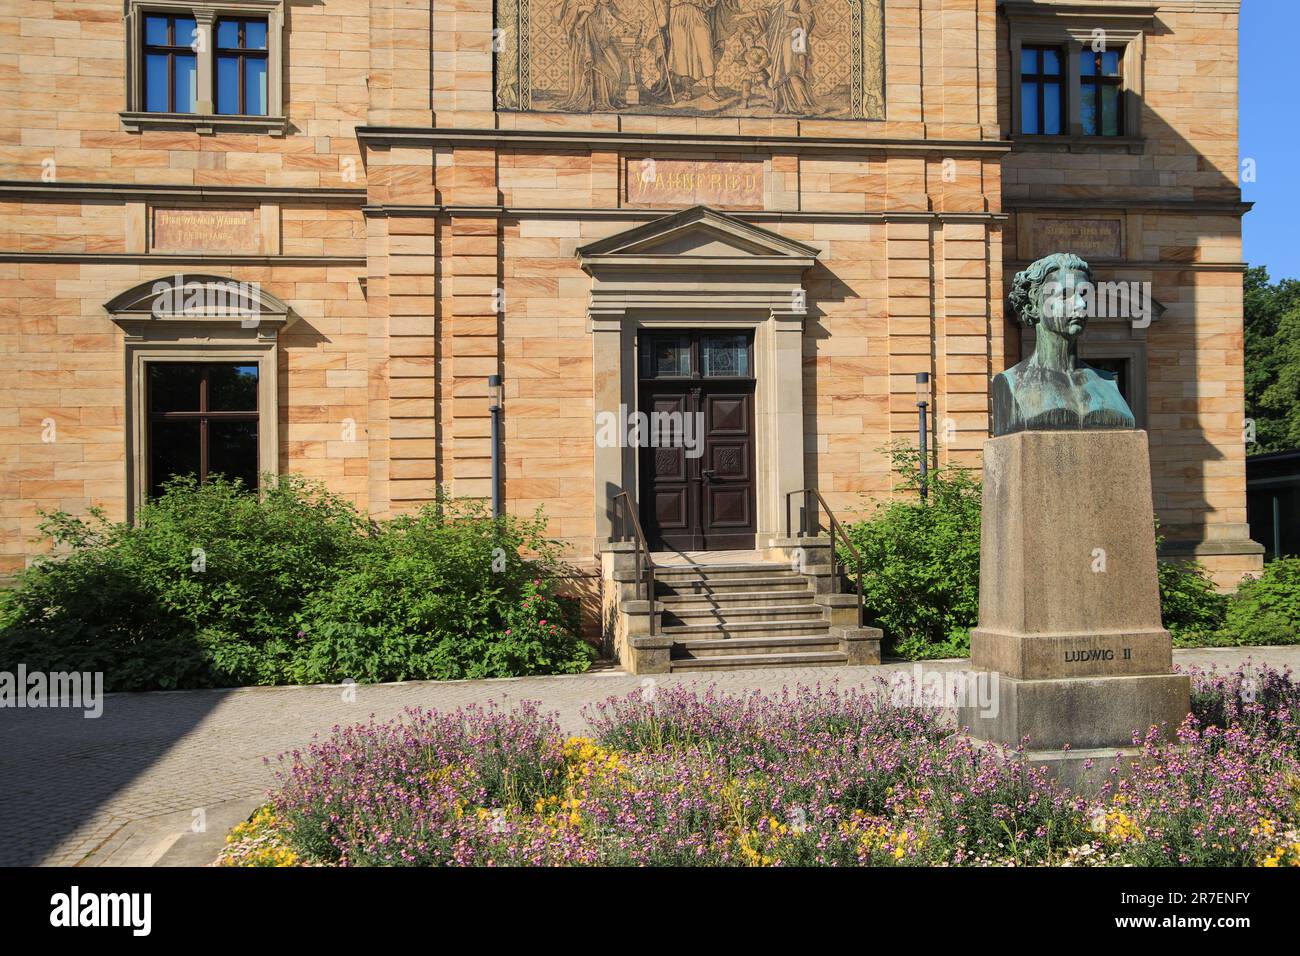 Das Wahnfried House ist das ehemalige Zuhause von Richard Wagner. Seit 1976 beherbergt das Wahnfried House das Richard Wagner Museum mit einer Büste von König Lud Stockfoto